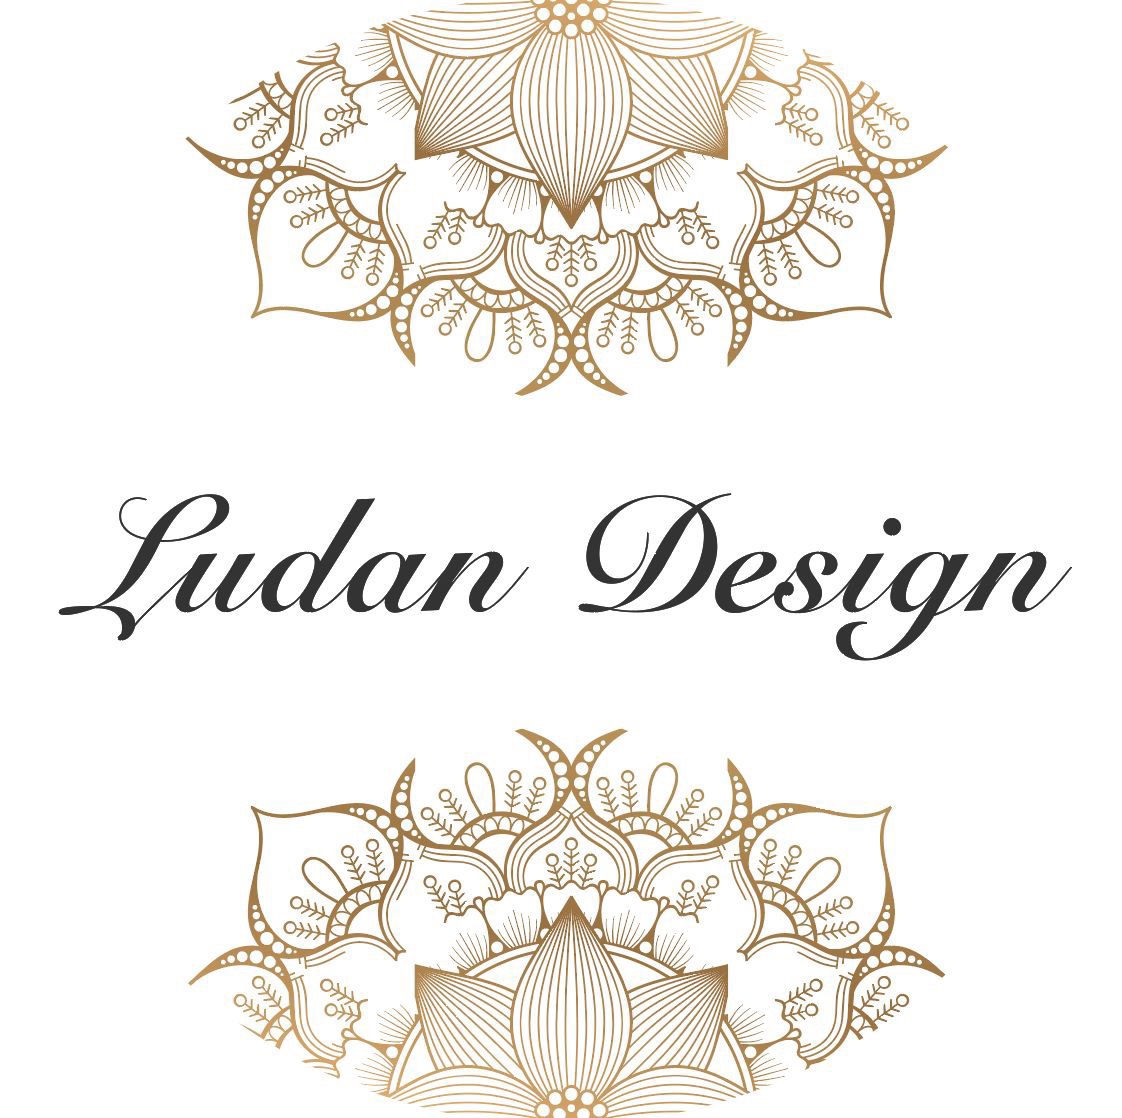 Ludan Design